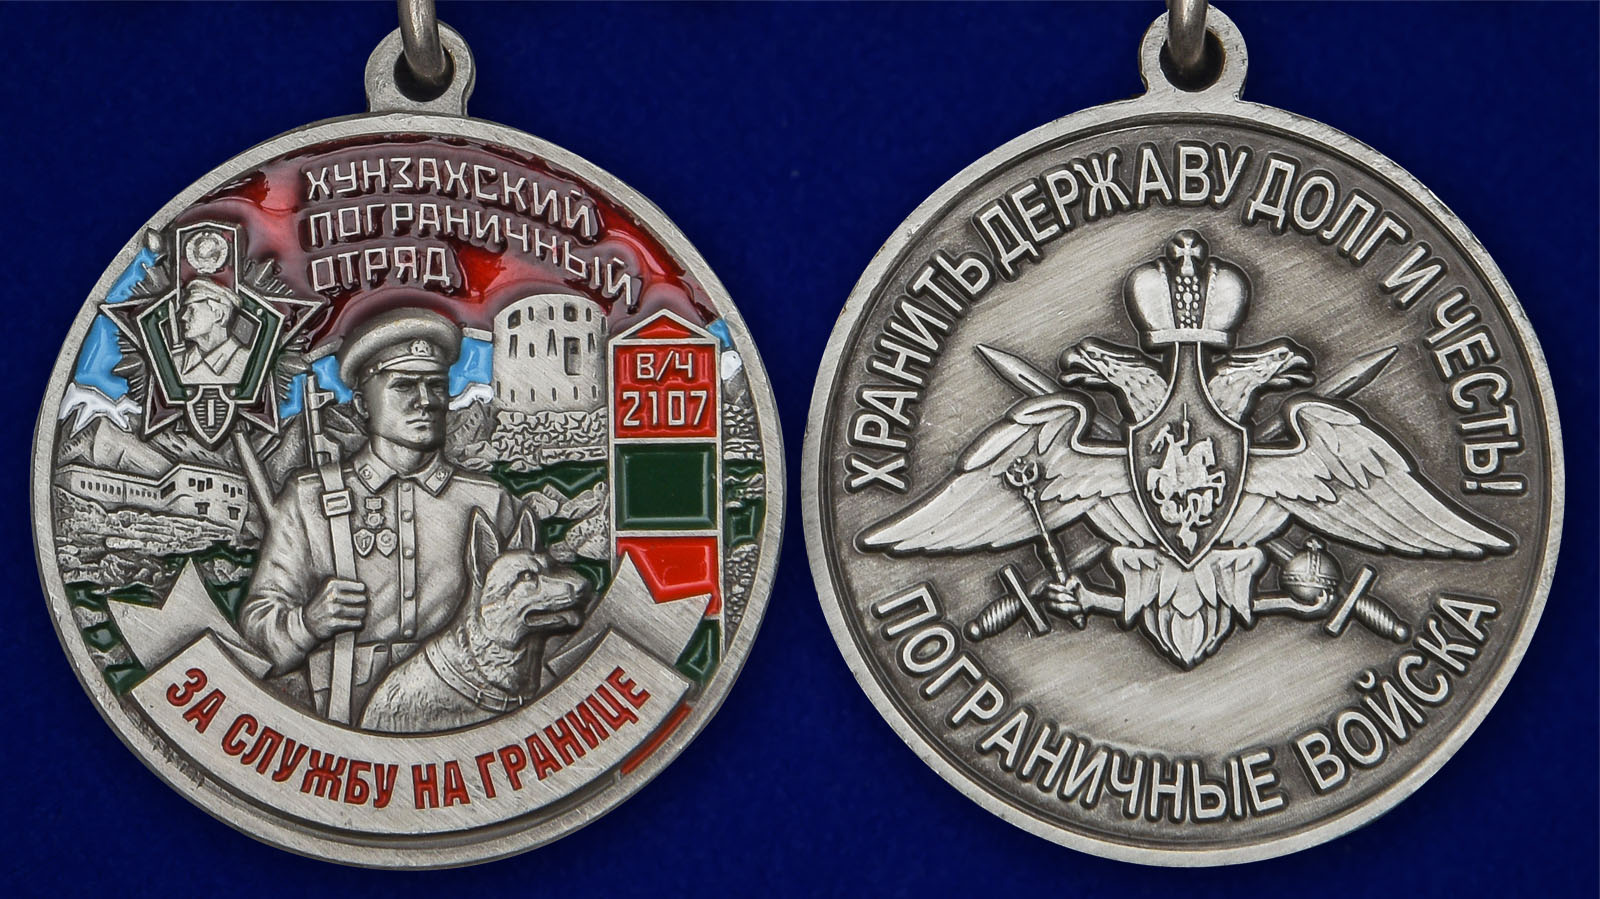 Наградная медаль "За службу в Хунзахском пограничном отряде" 